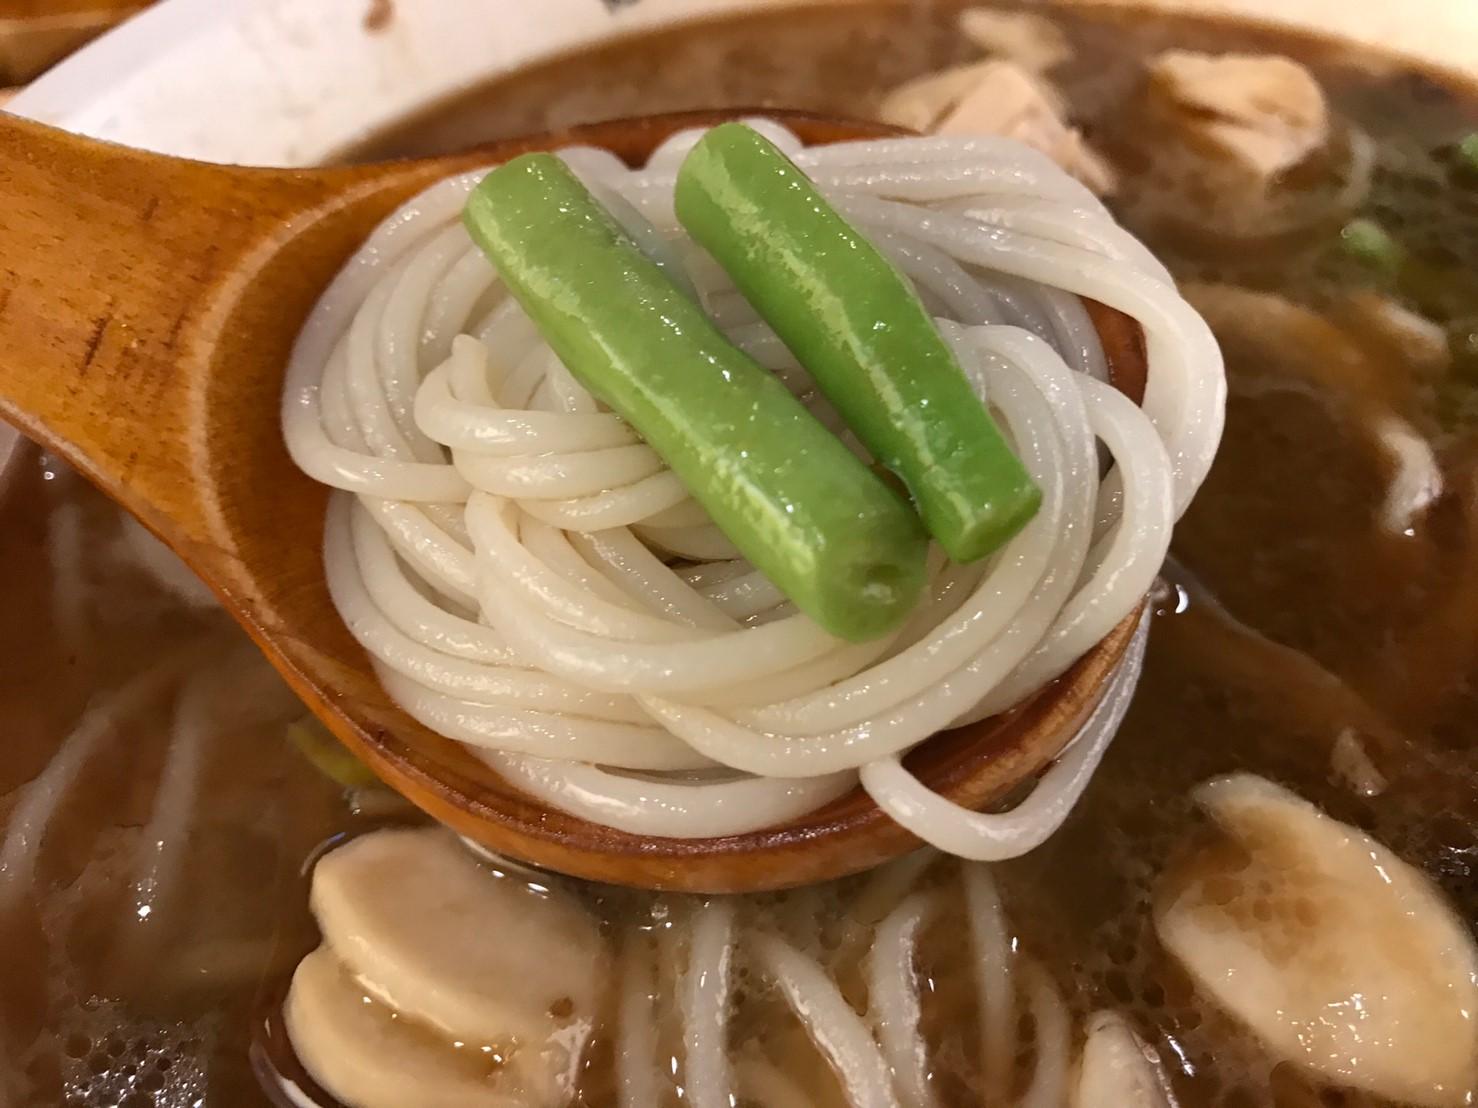 高雄楠梓-嗦米線-小鍋麻辣米線套餐